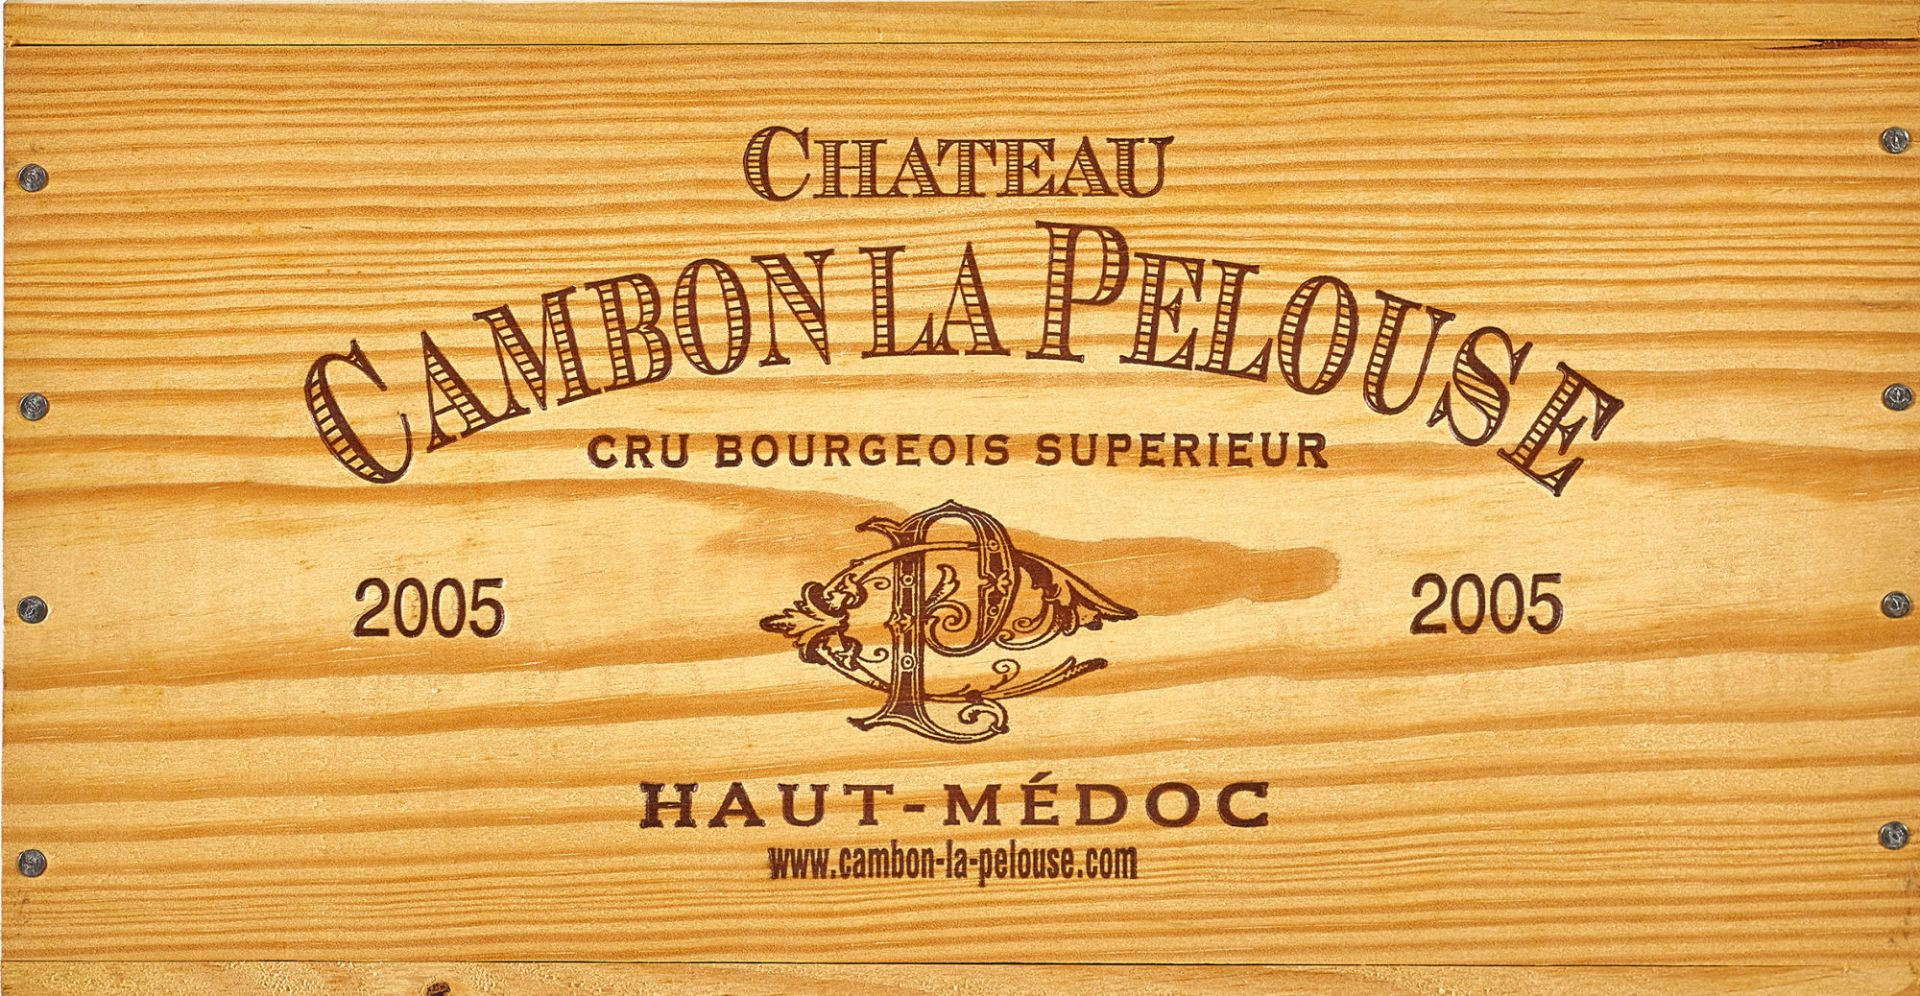 CHÂTEAU CAMBON LA PELOUSE: Haut-Médoc, Cru Bourgeois Supérieur, 2005.